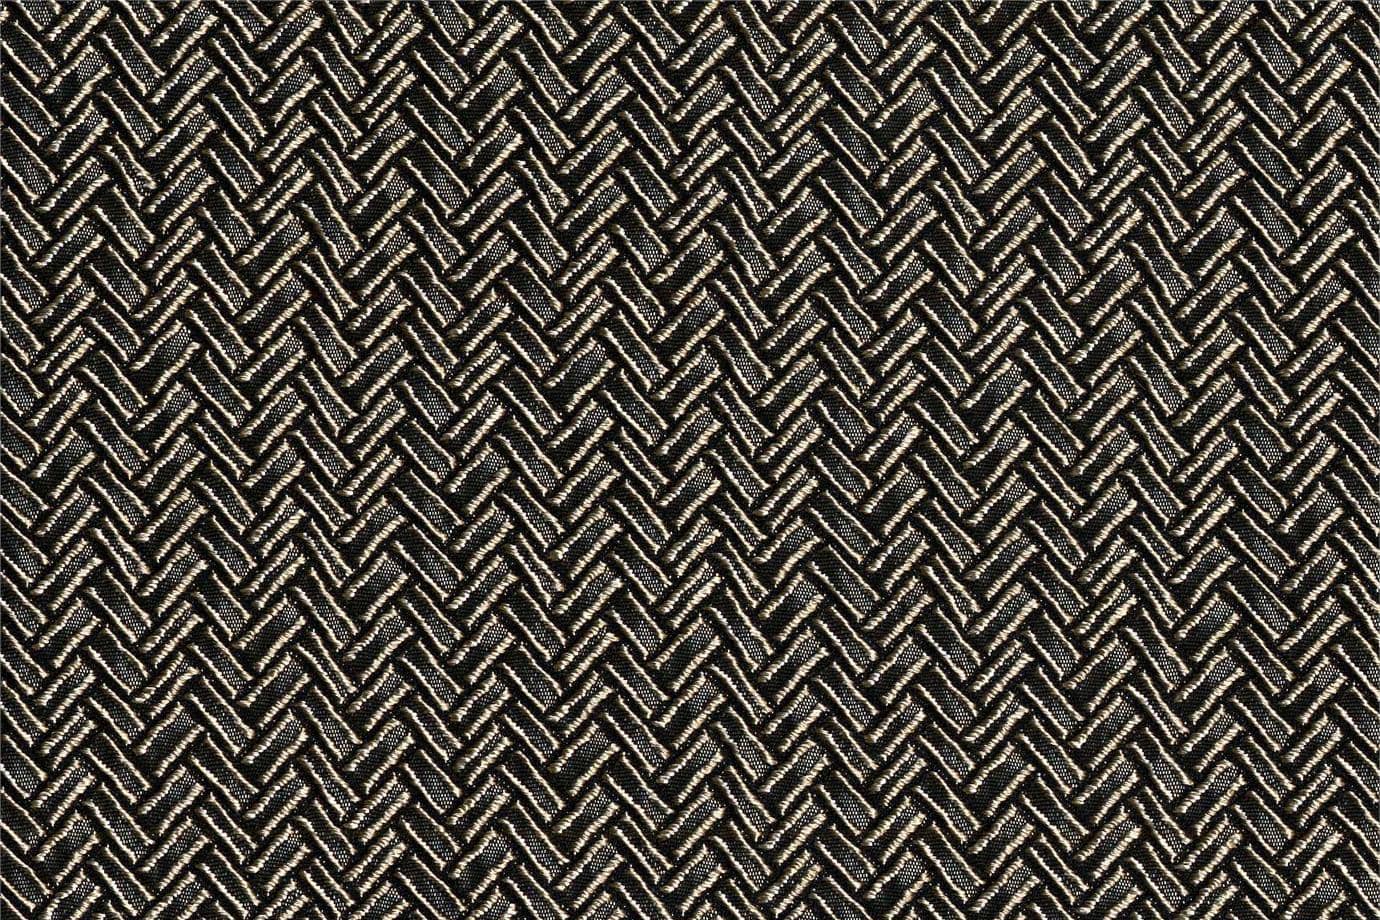 J1951 SECONDIGLIANO 012 Fuliggine home decoration fabric